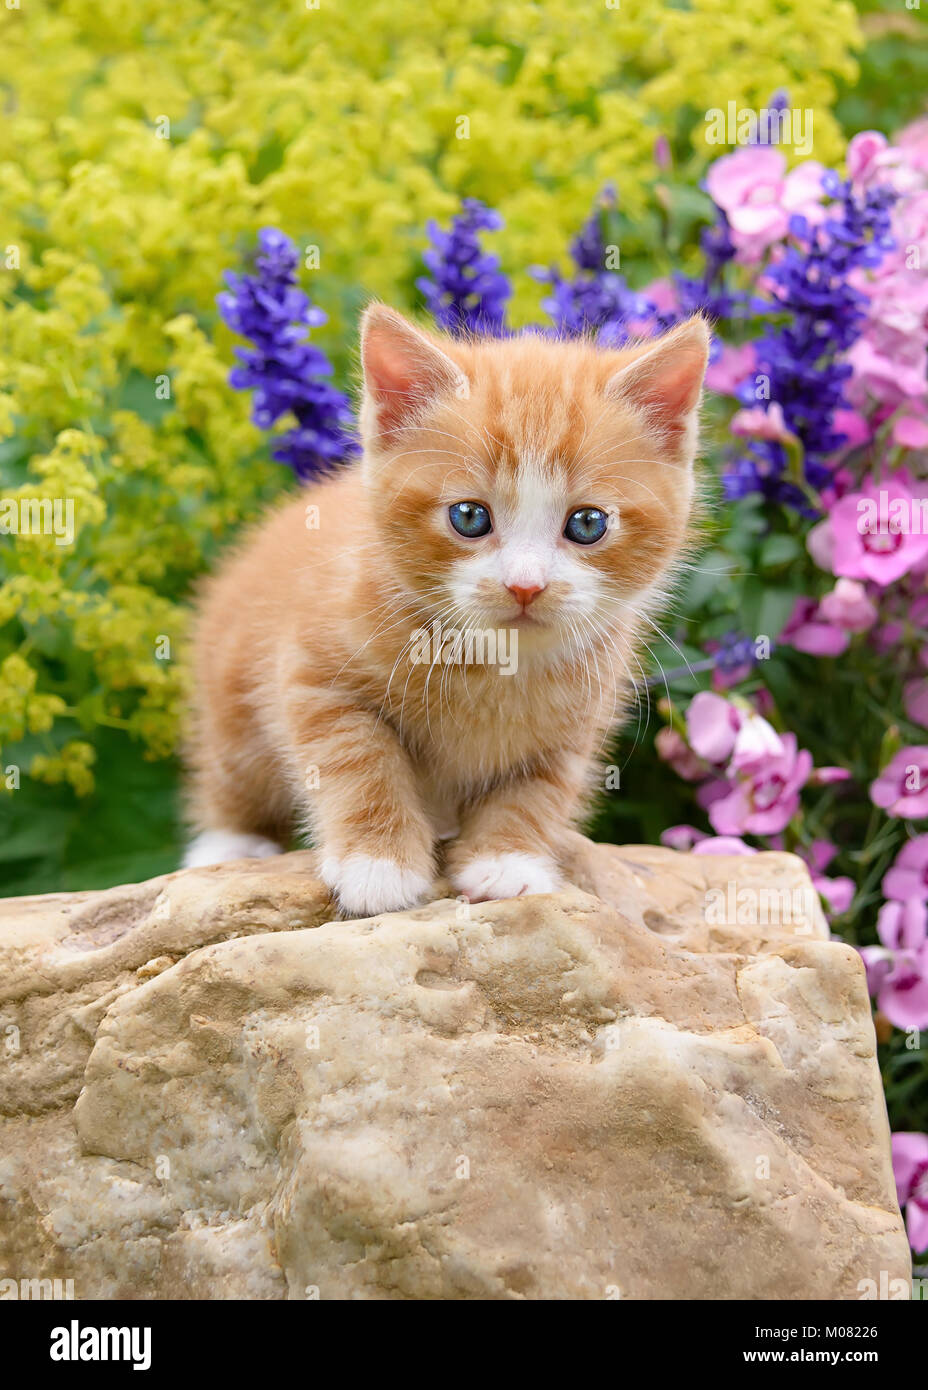 Nette junge rot gestromt mit Weiß Katze Katze mit blauen Augen steht auf einem Felsen in einem blühenden Garten neugierig beobachten Stockfoto